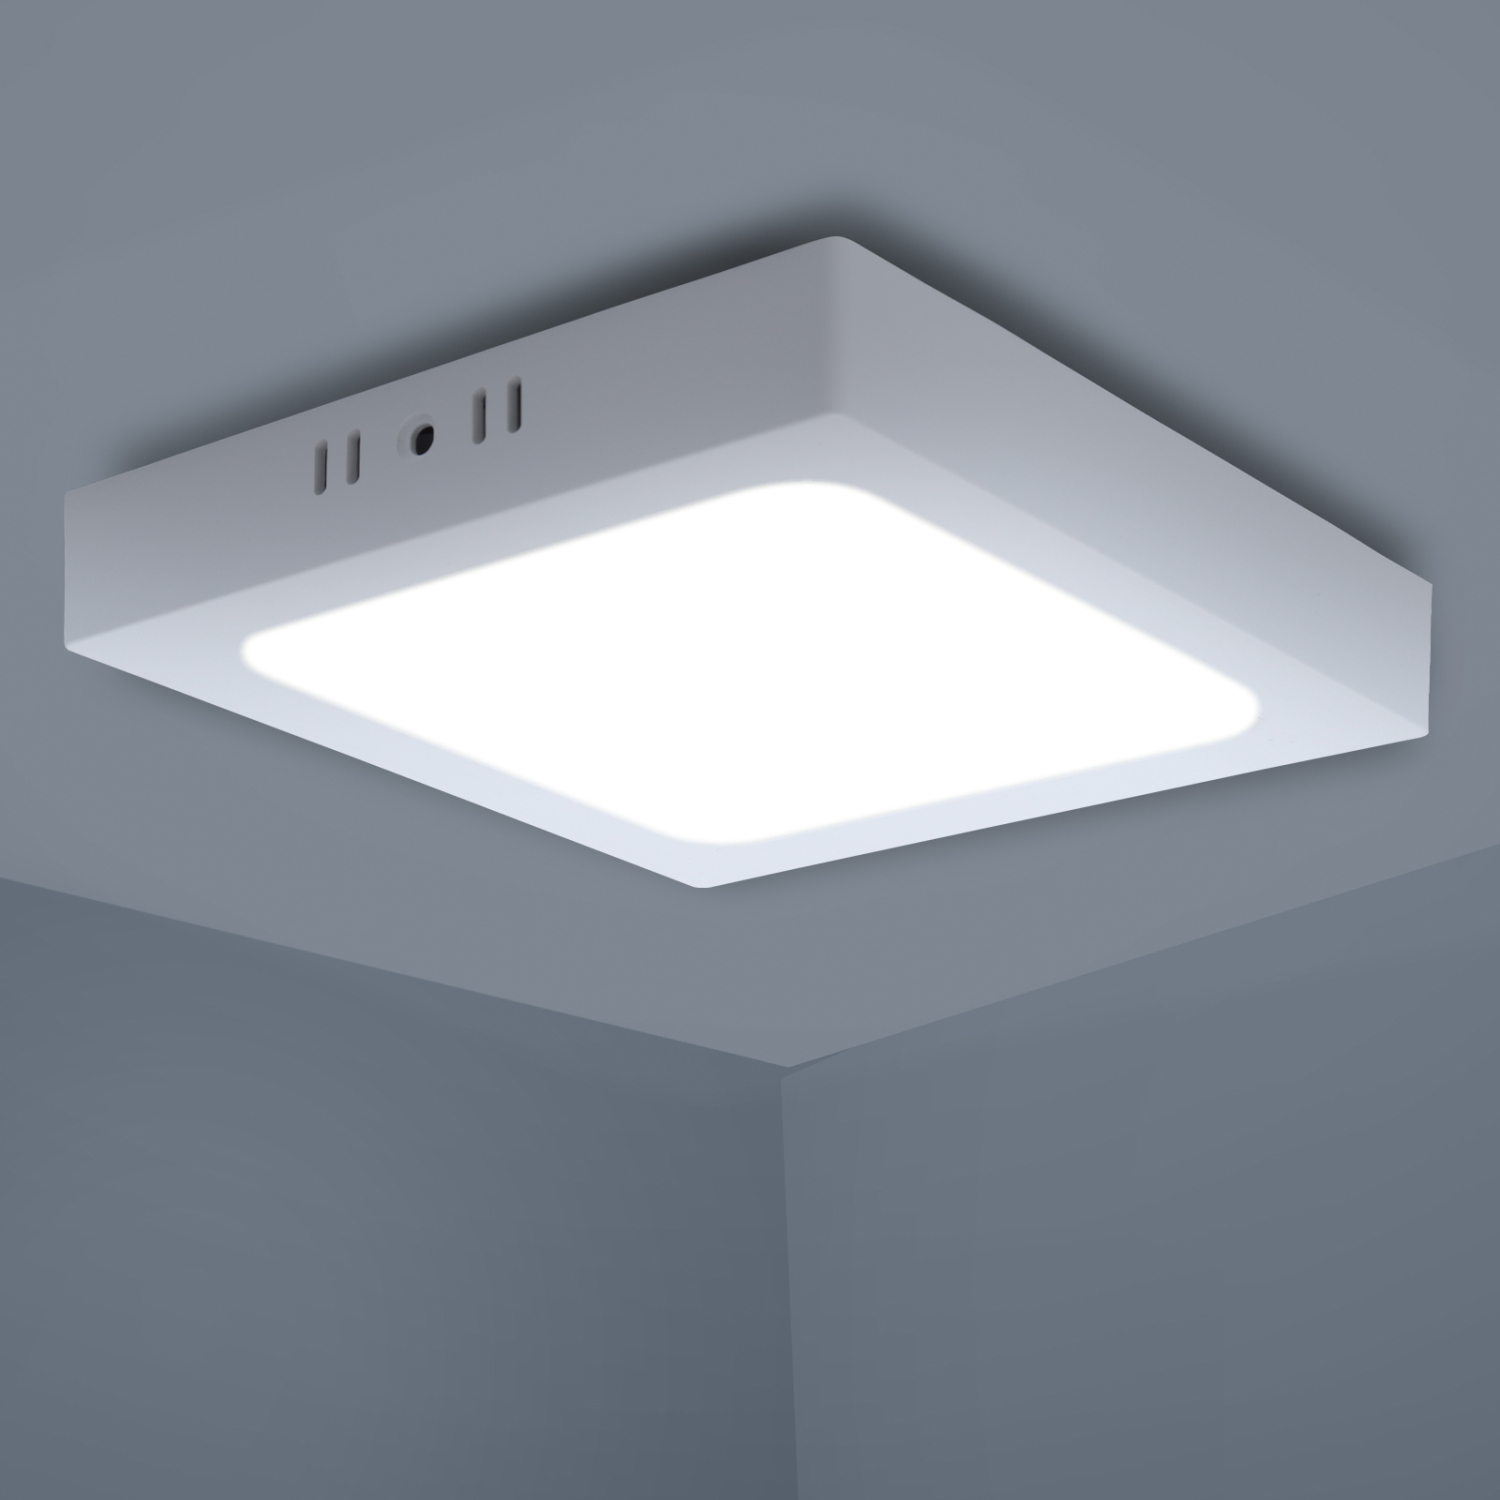 Aigostar Deckenlampe LED, 12W entspricht 120W, 6500K, 960LM Deckenleuchte für Wohnzimmer, Schlafzimmer, Küche, Flur, Balkon, Esszimmer, 200-240V Kein Trafo erforderlich [Energieklasse A+]